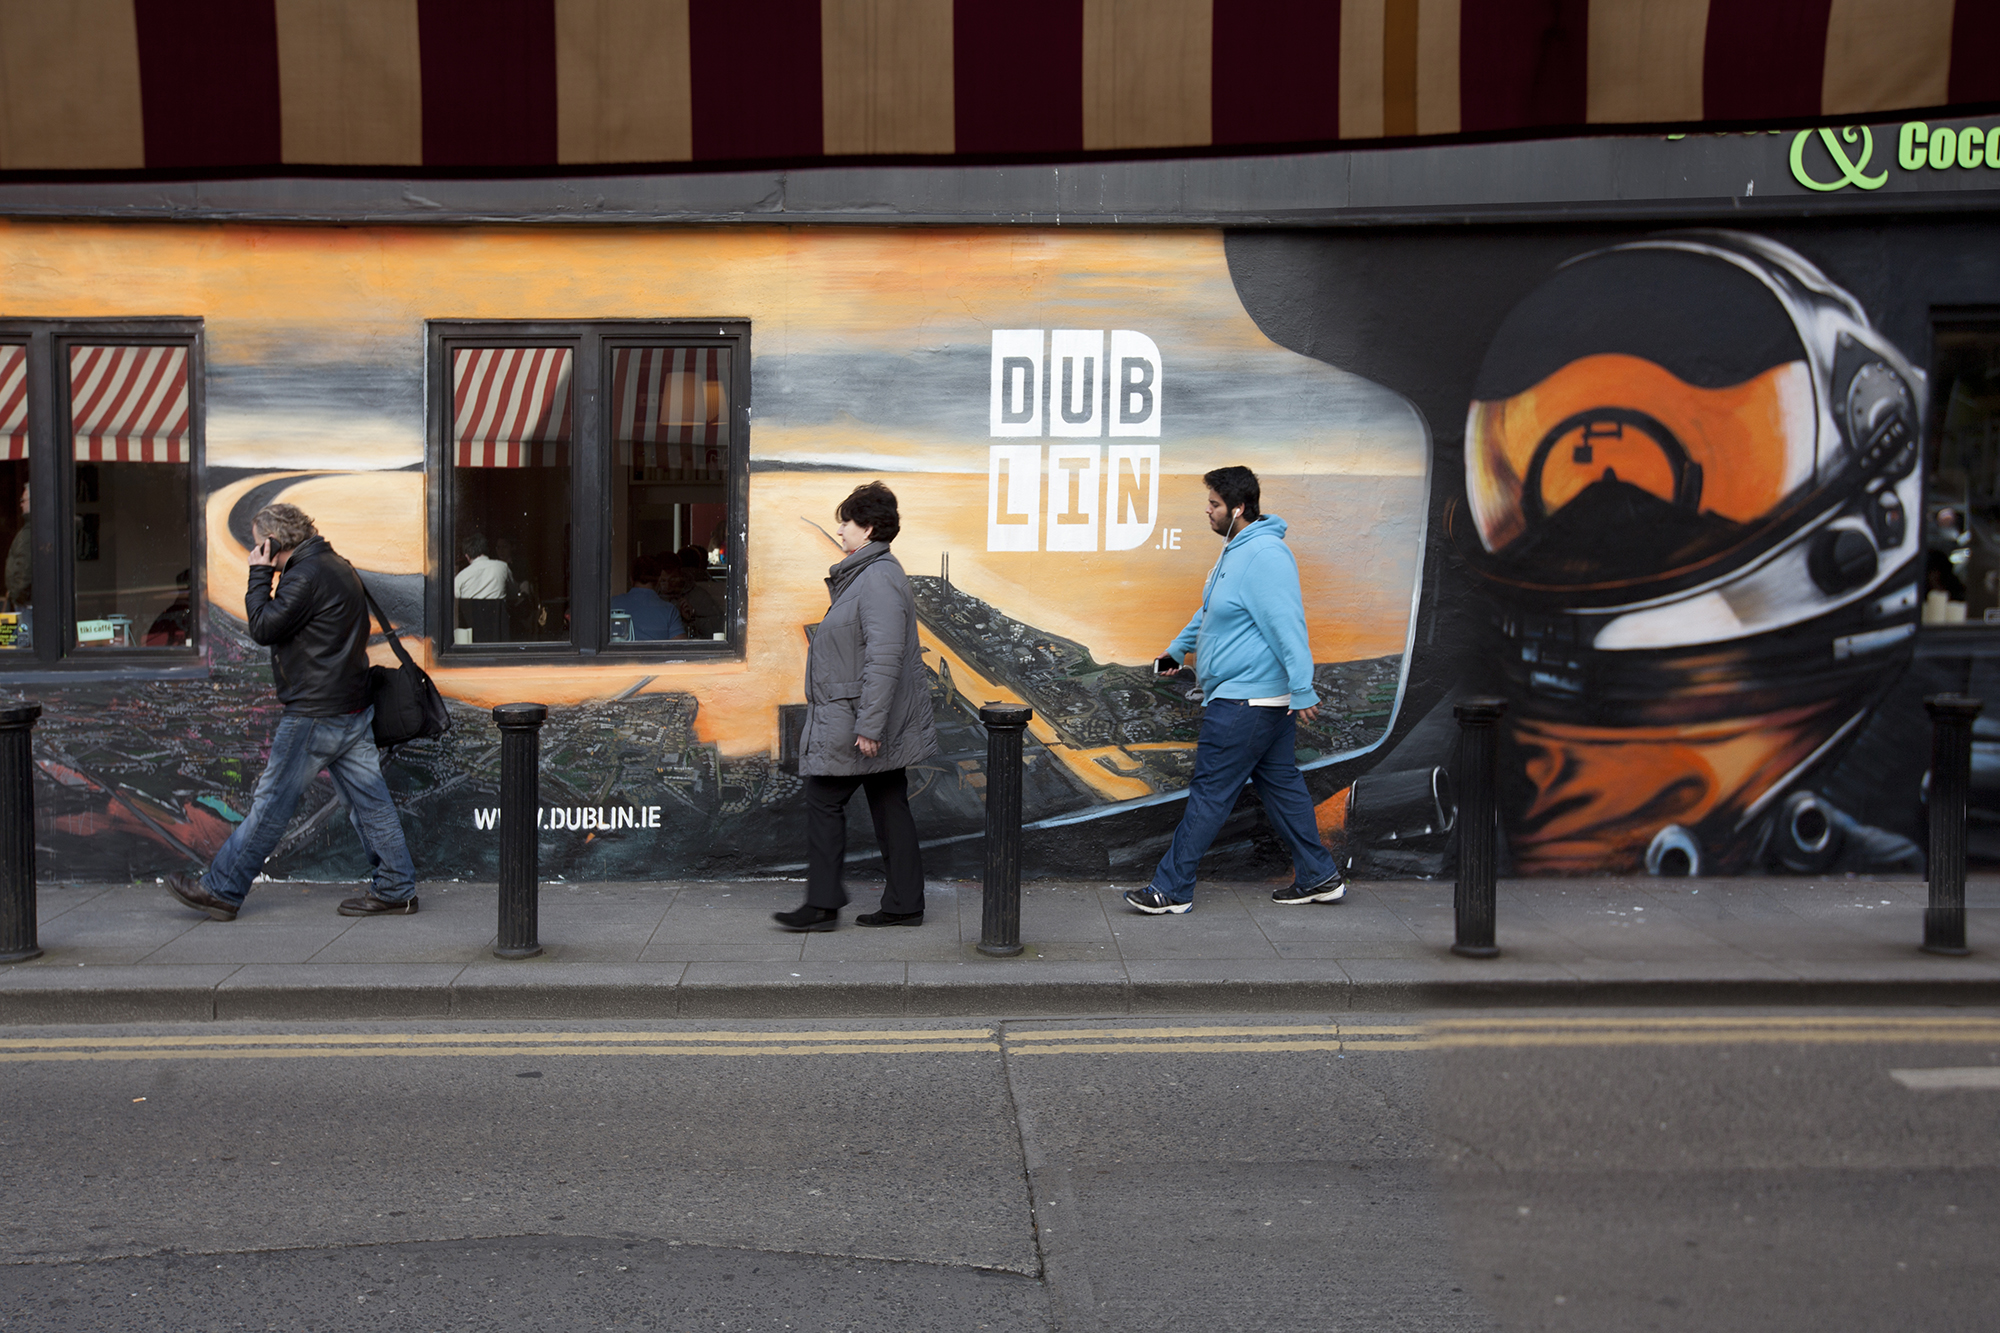 Cover image: Dublin.ie – Domestic Campaign